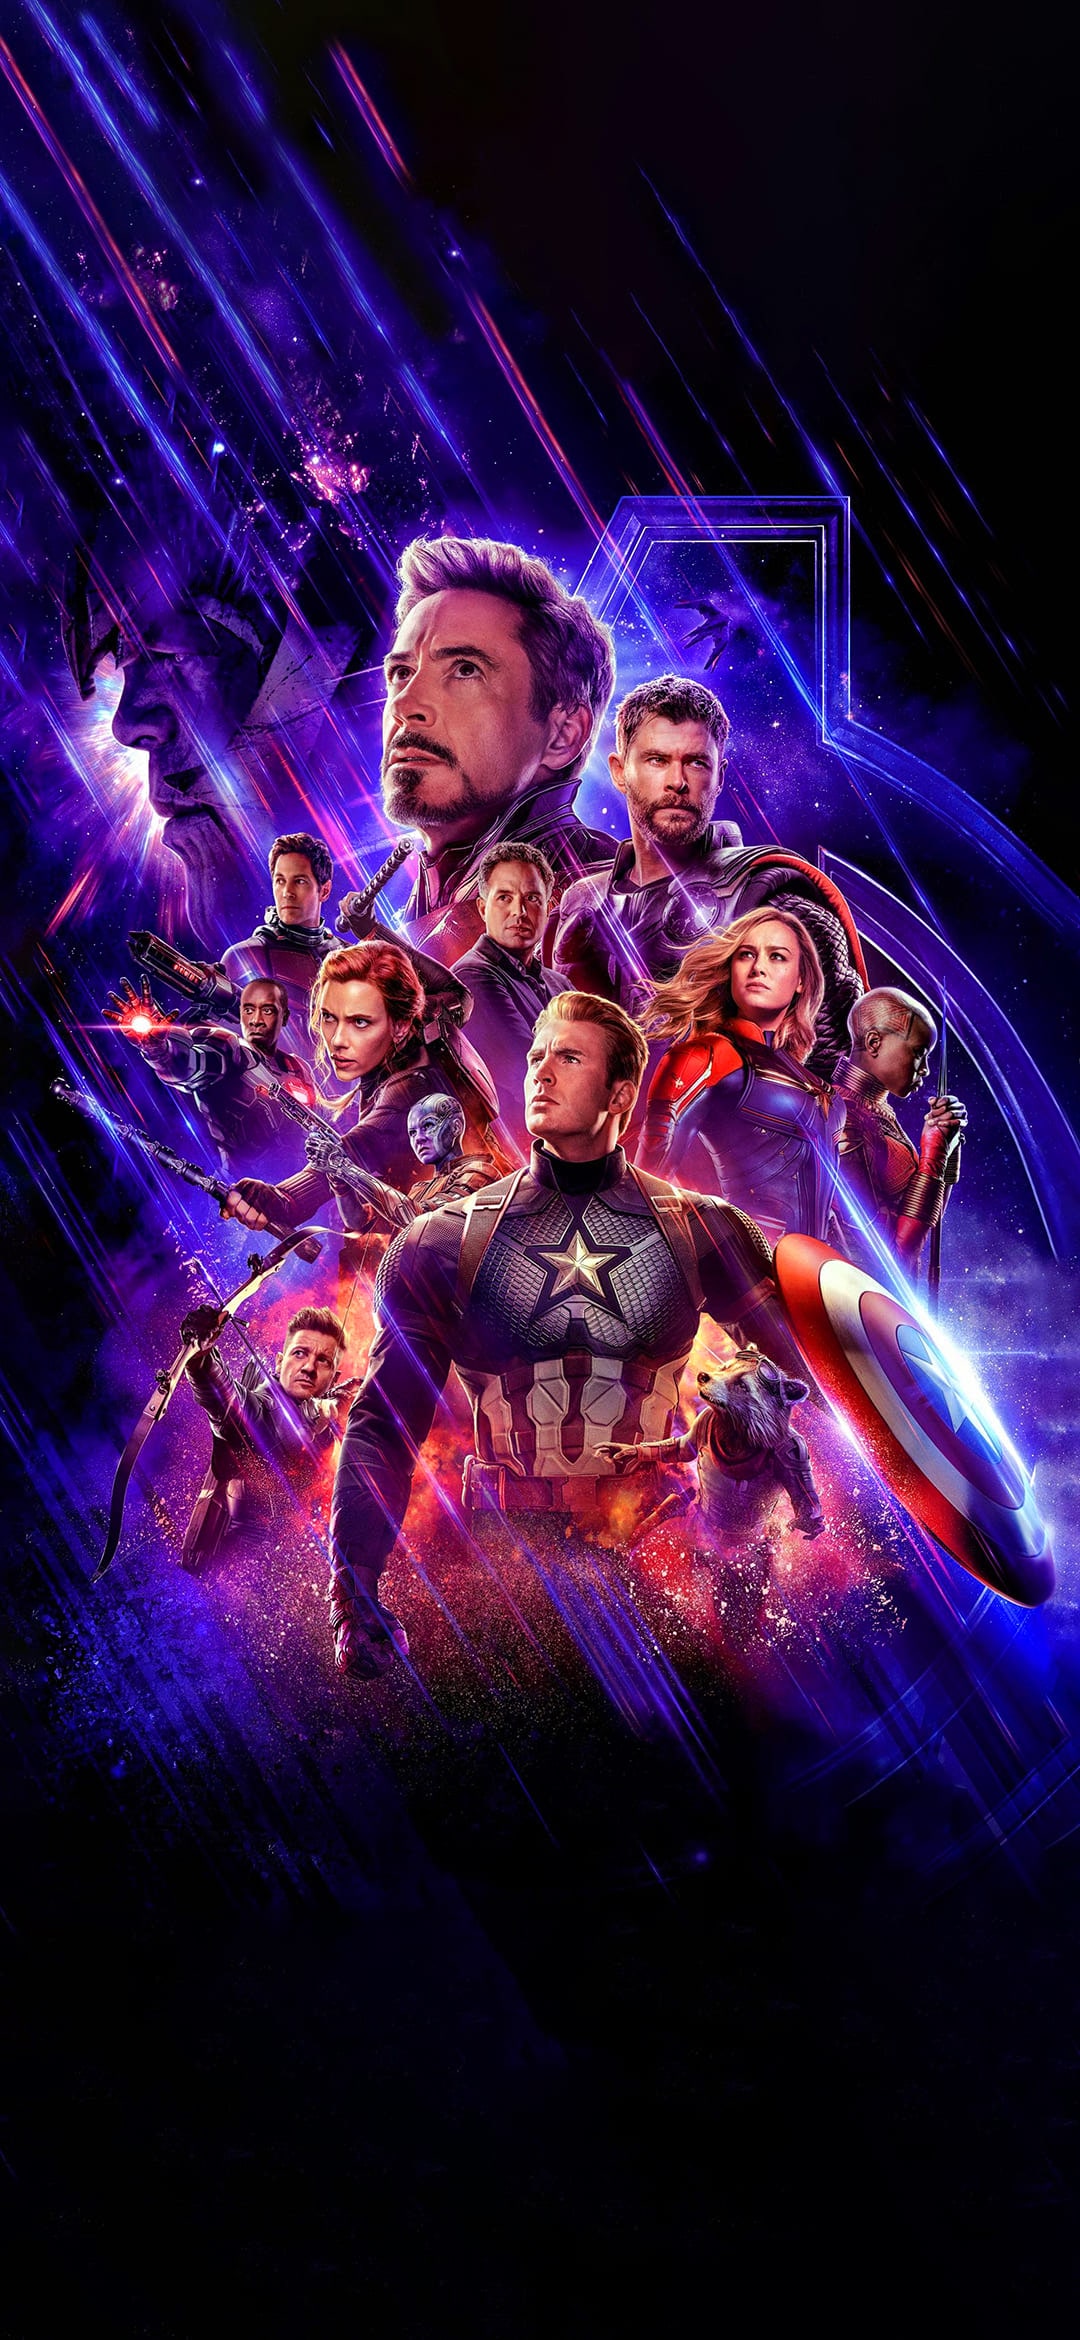 Avengers Endgame Wallpapers